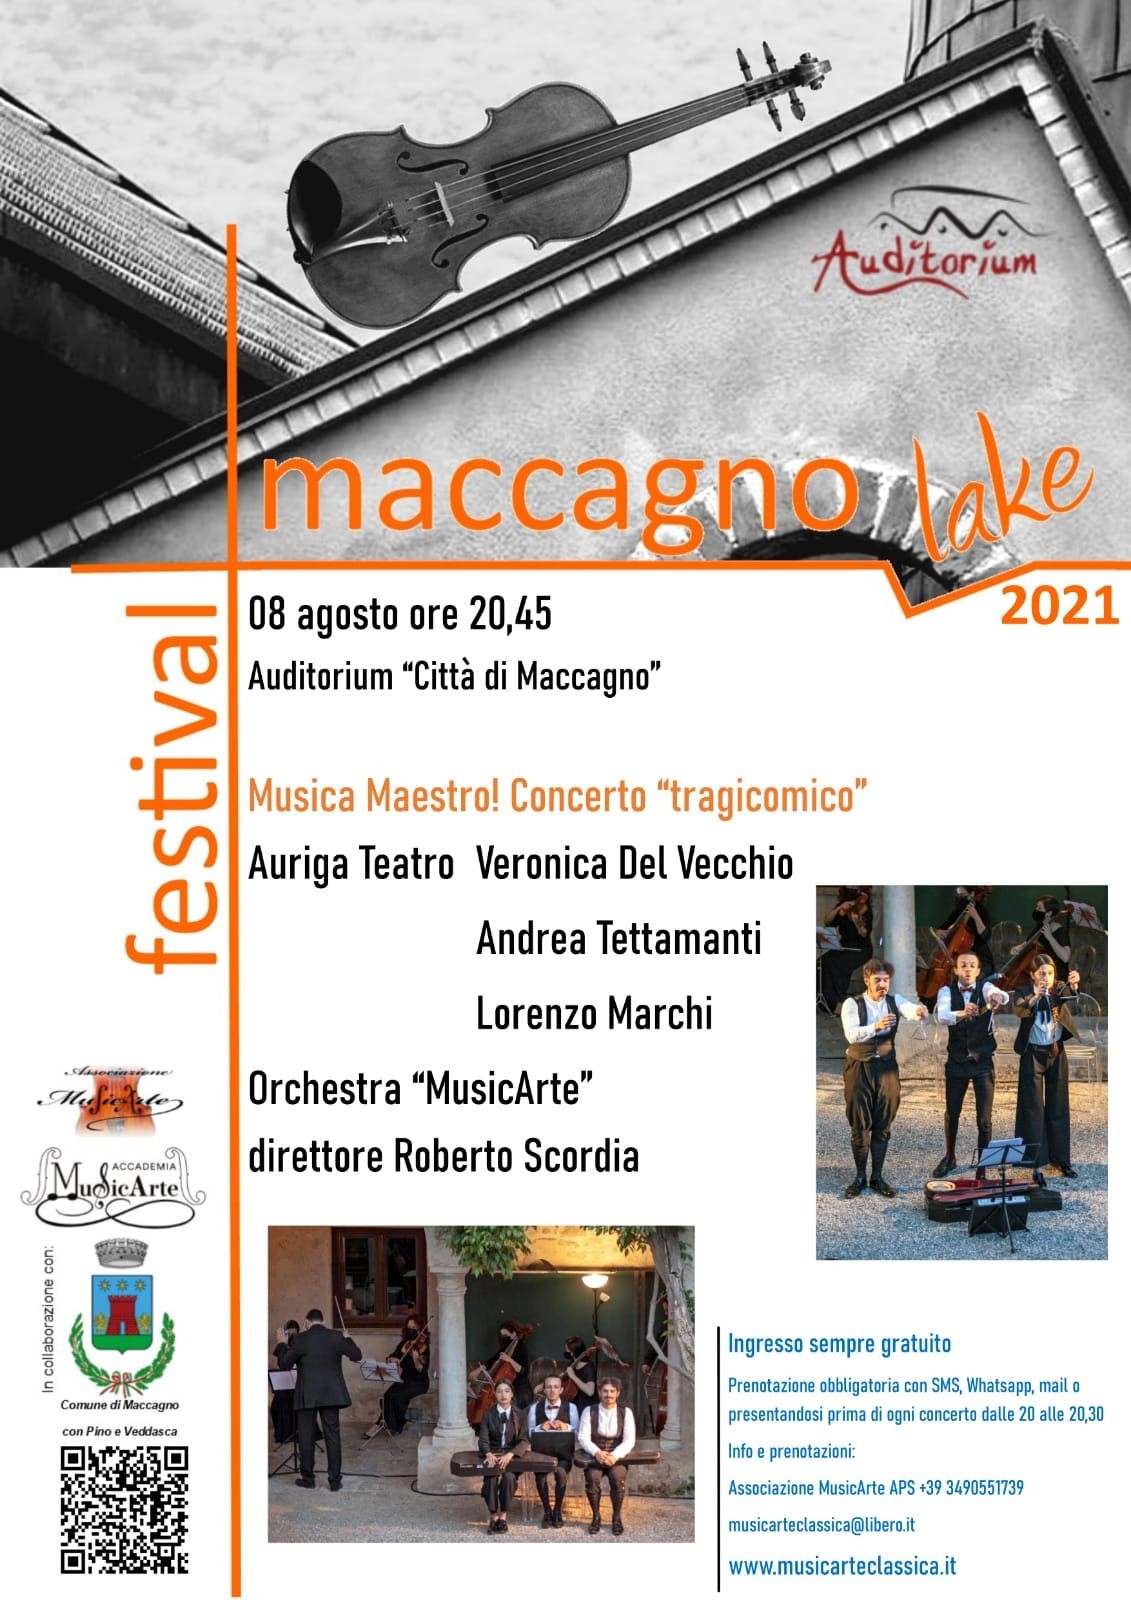 Maccagno Lake Festival 2021